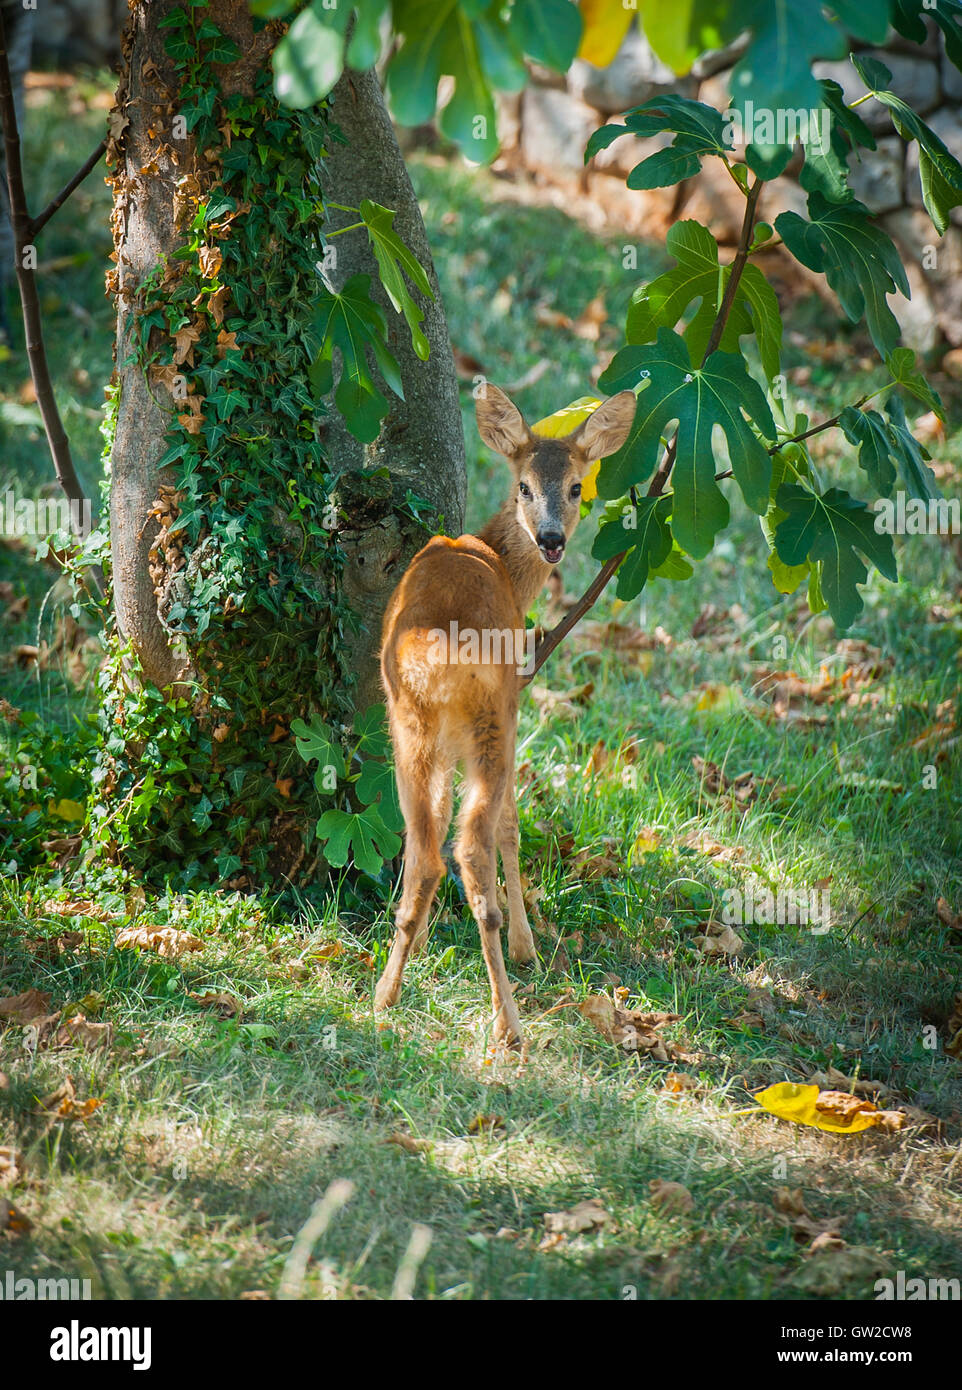 Deer in the garden Stock Photo